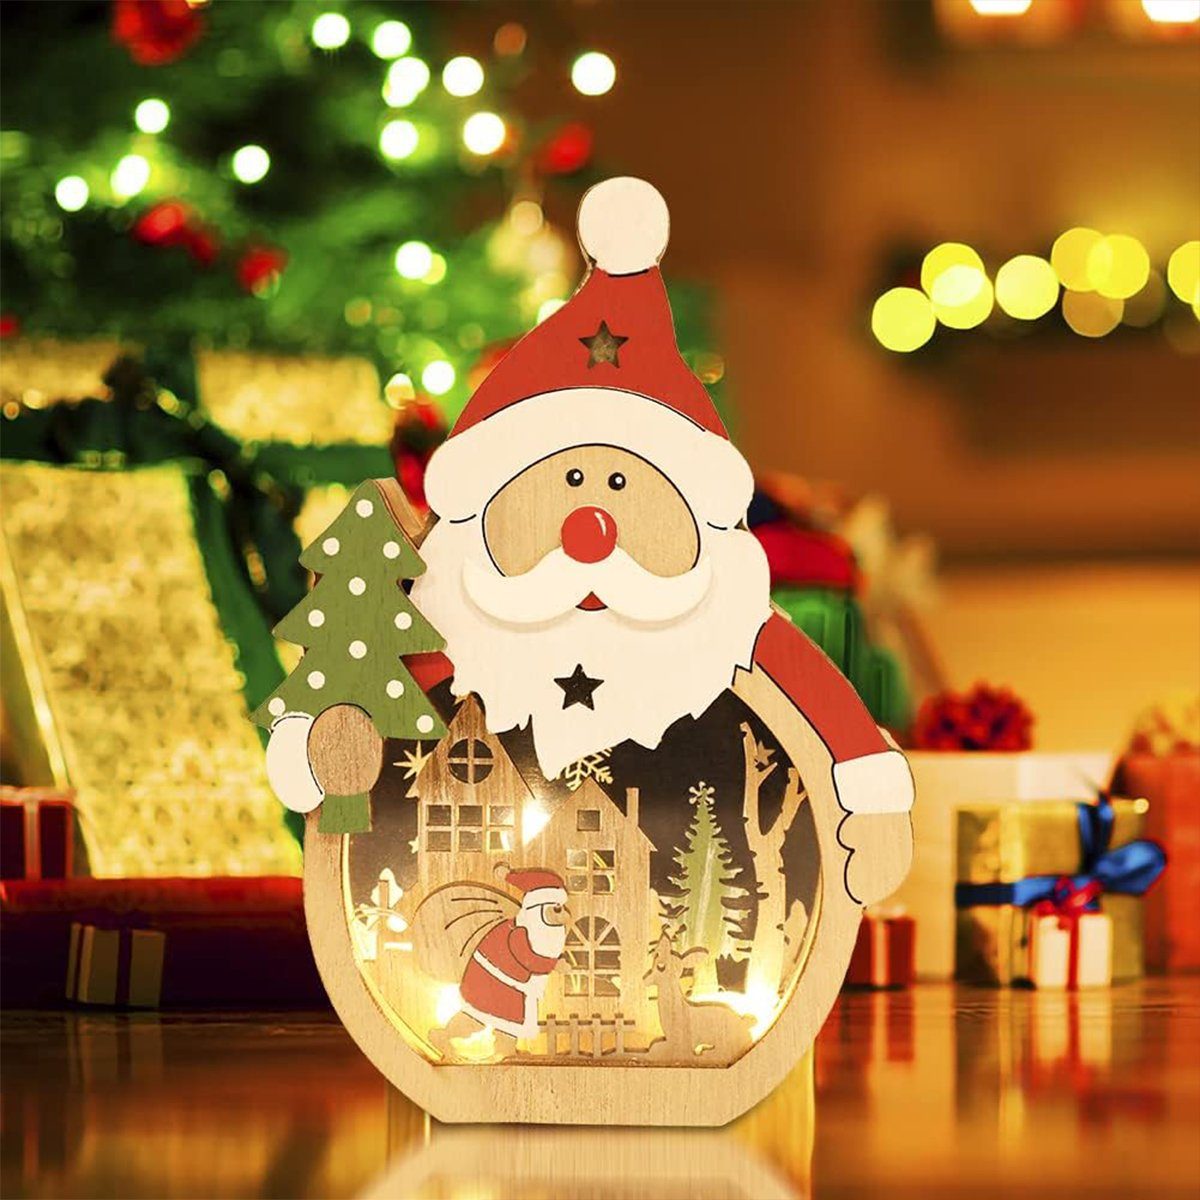 für Weihnachts, LED Holz Ornamente Innendekoration Holz Deko Holz Geschenke Weihnachten autolock Weihnachtsfigur Weihnachtsdekorationen